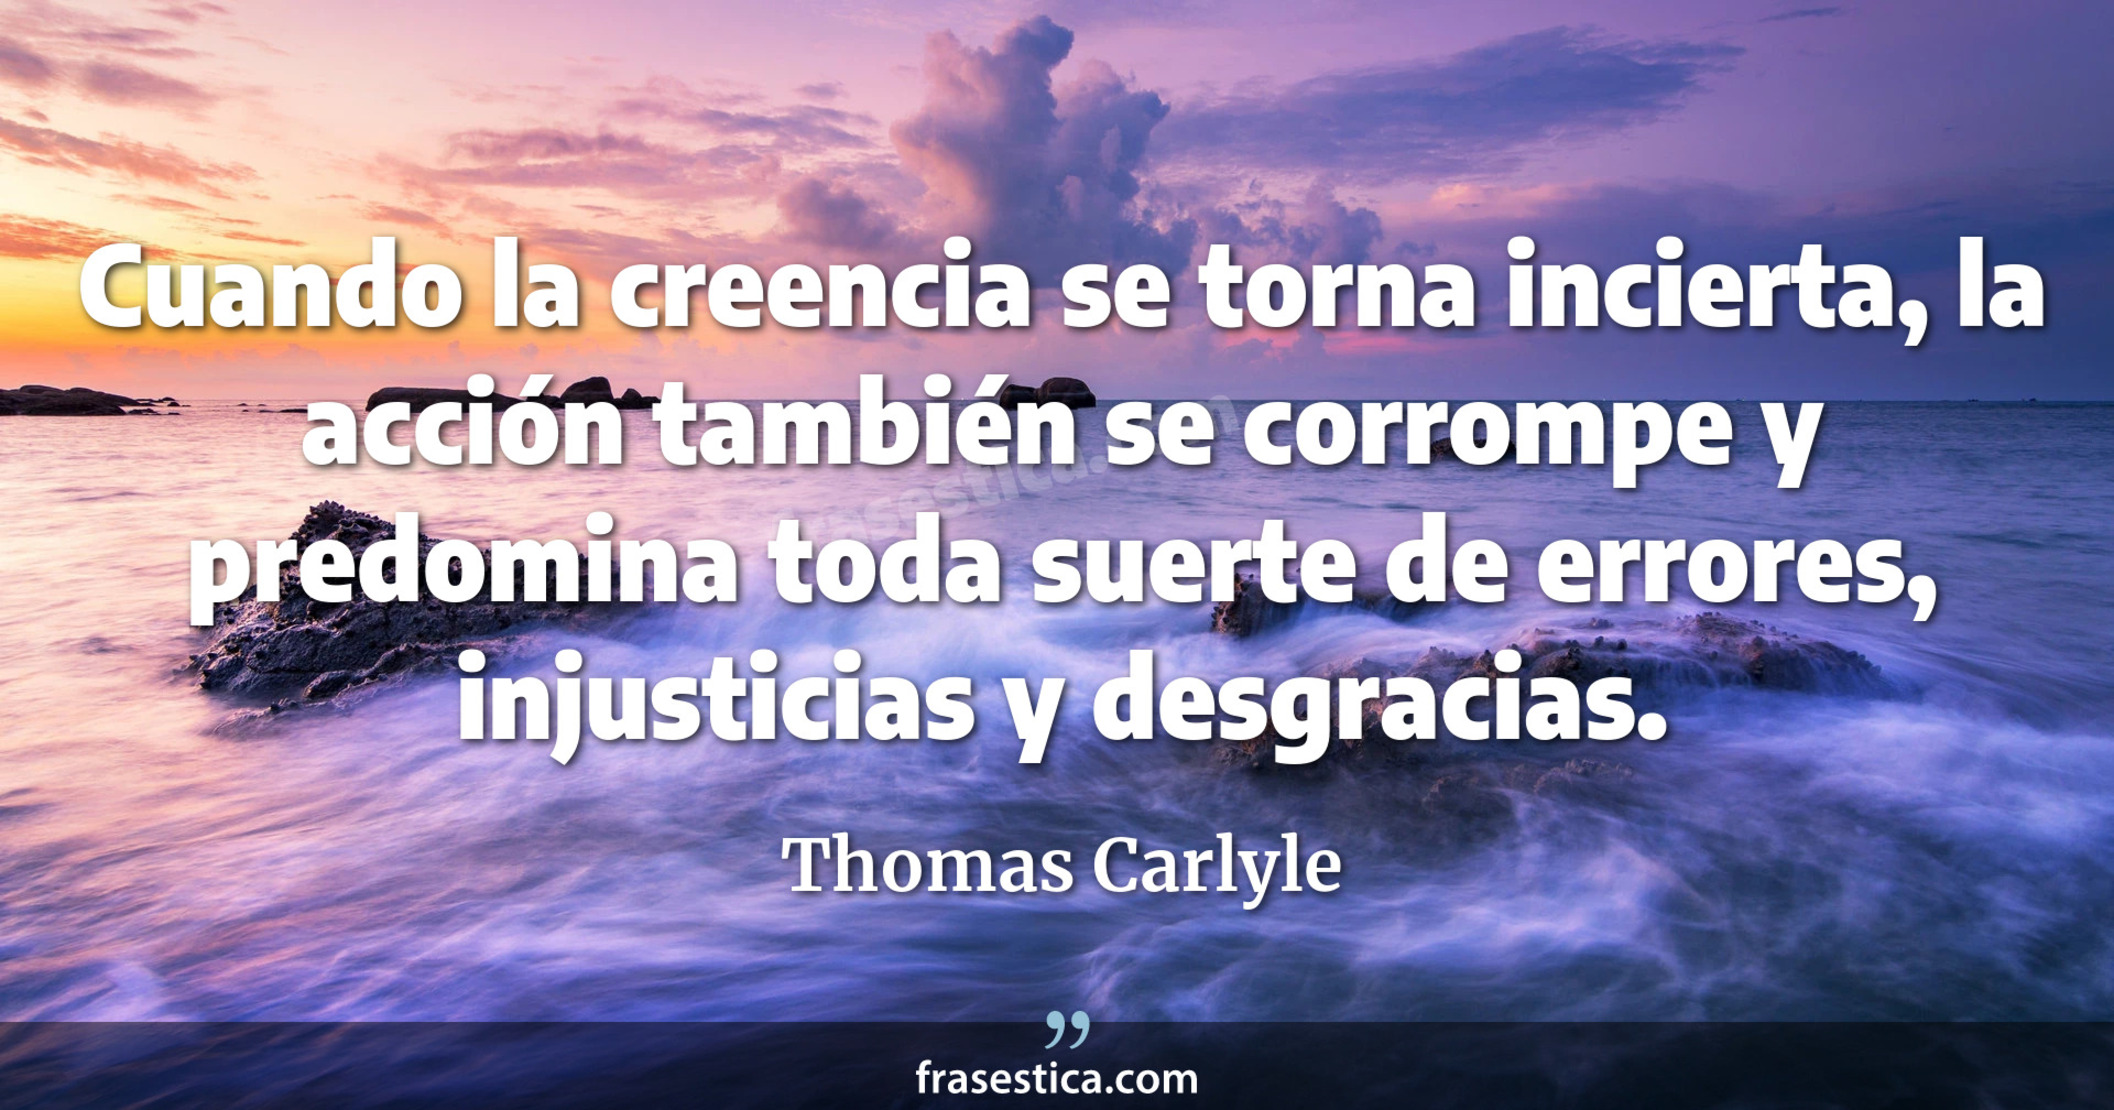 Cuando la creencia se torna incierta, la acción también se corrompe y predomina toda suerte de errores, injusticias y desgracias. - Thomas Carlyle